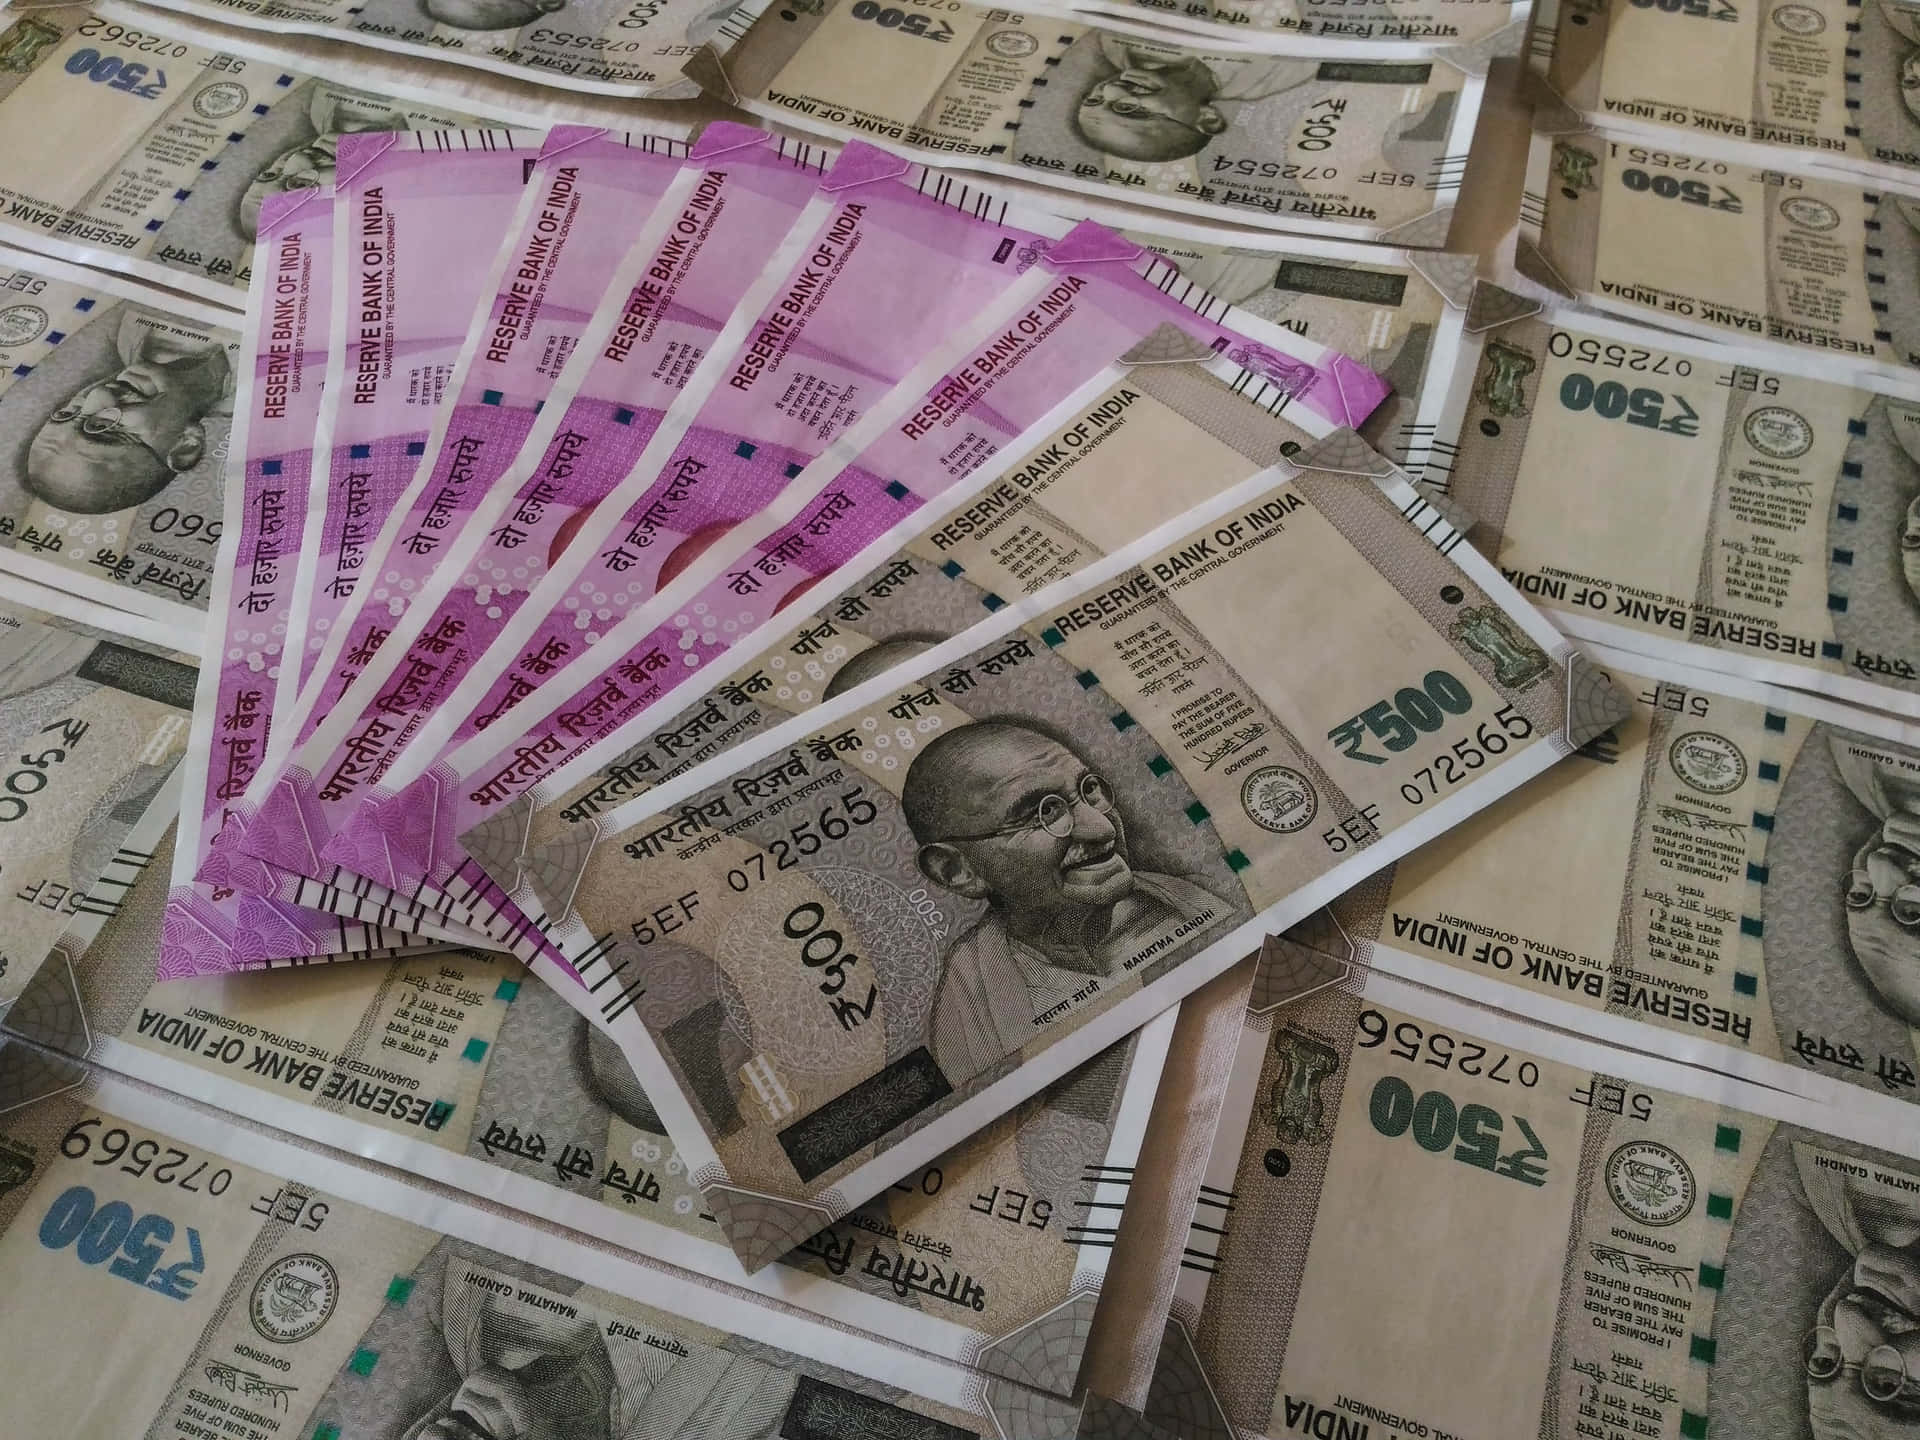 Indischebanknoten Sind Übereinander Gestapelt.